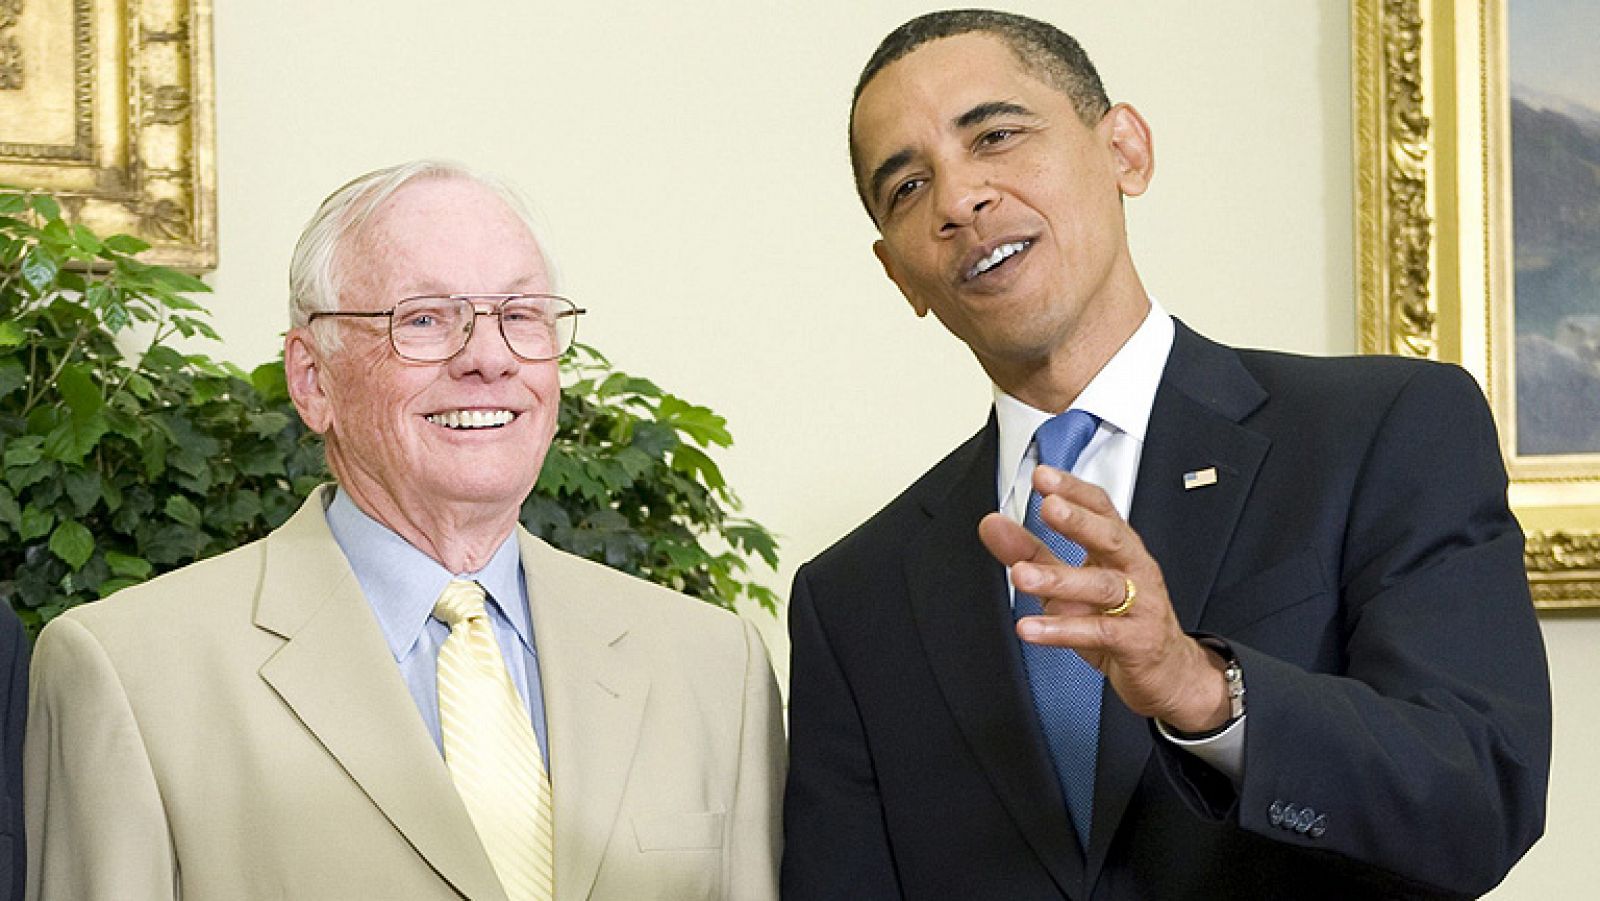 Obama recuerda al Neil Armstrong como el mayor héroe americano